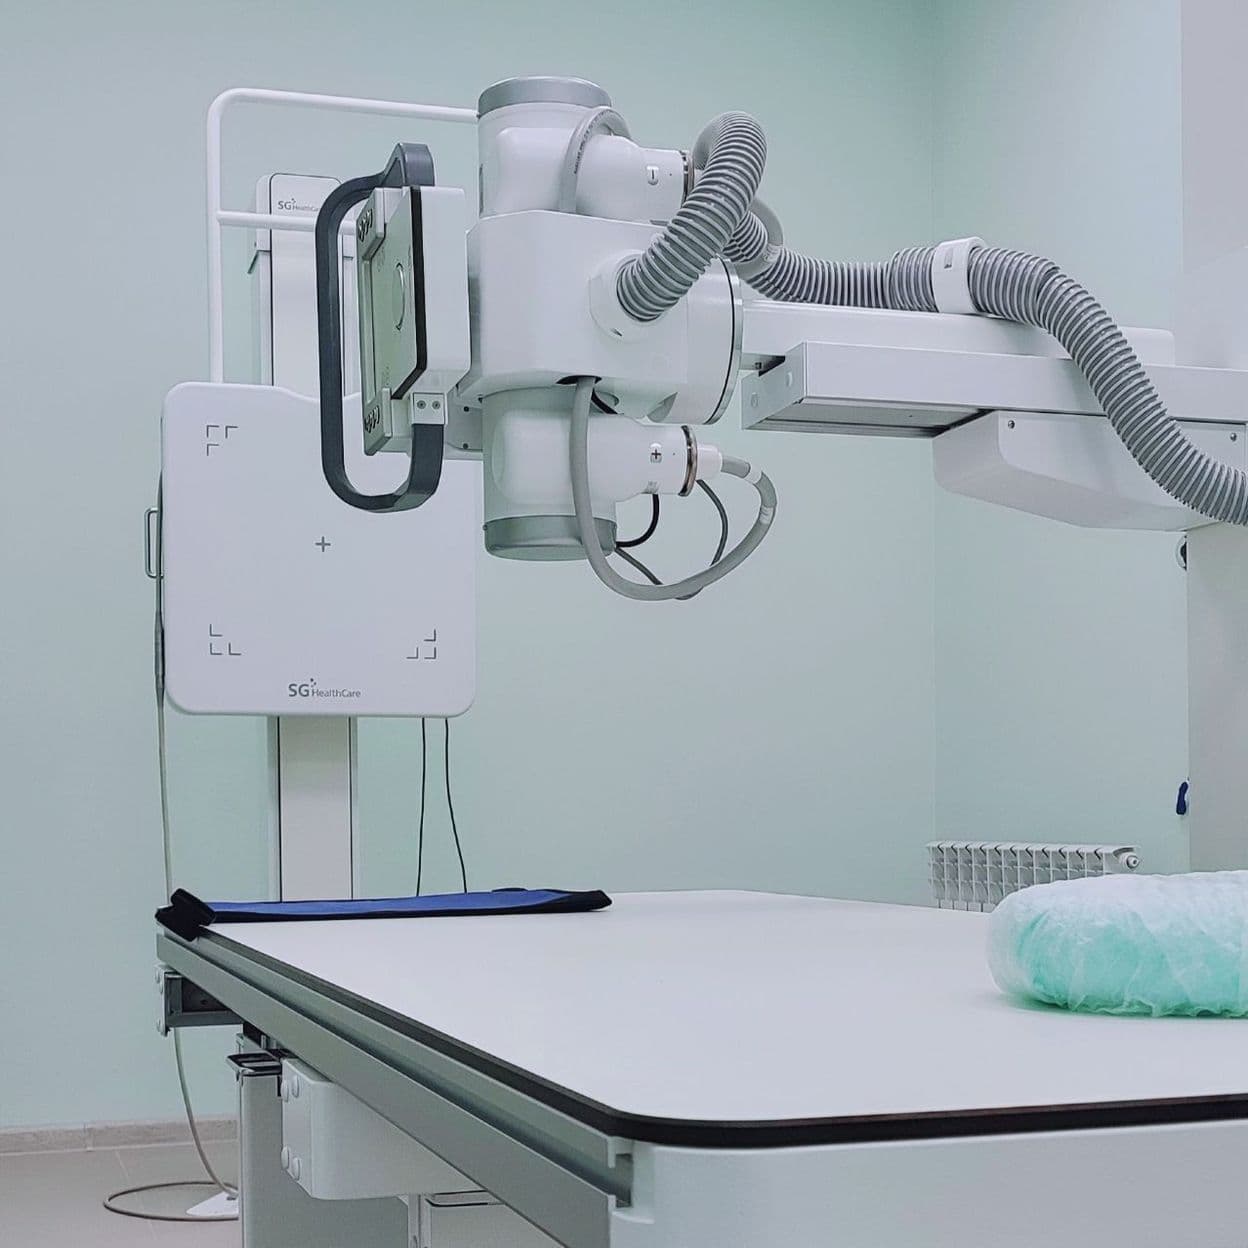 Купить Обследование проводится на рентгеновском комплексе корейского производства JUMONG® - это цифровое высокочувствительное оборудование дает широкие диагностические возможности и позволяет получать безупречные рентгеновские снимки при обследовании любых частей тела